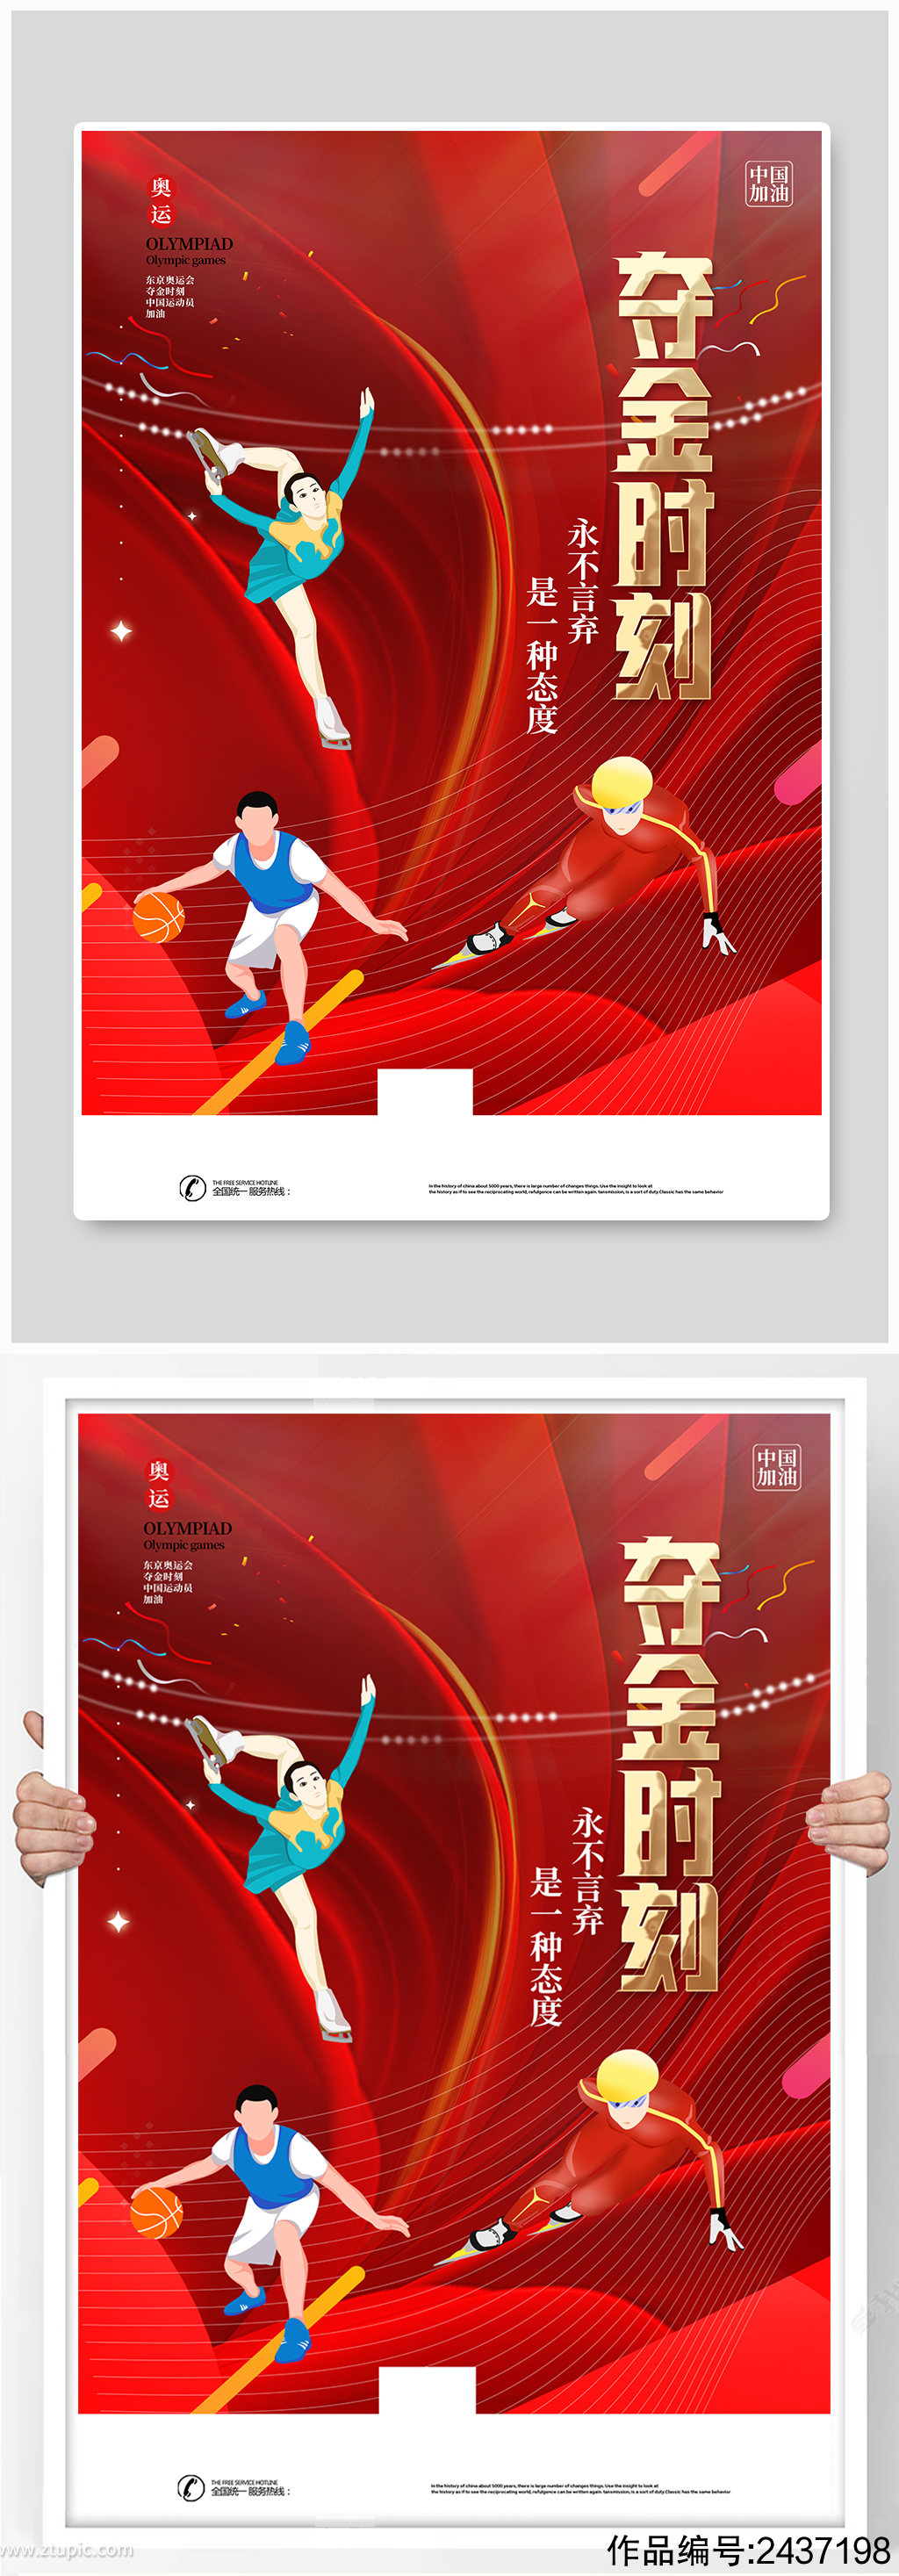 红色东京奥运会激情奥运全民运动海报素材